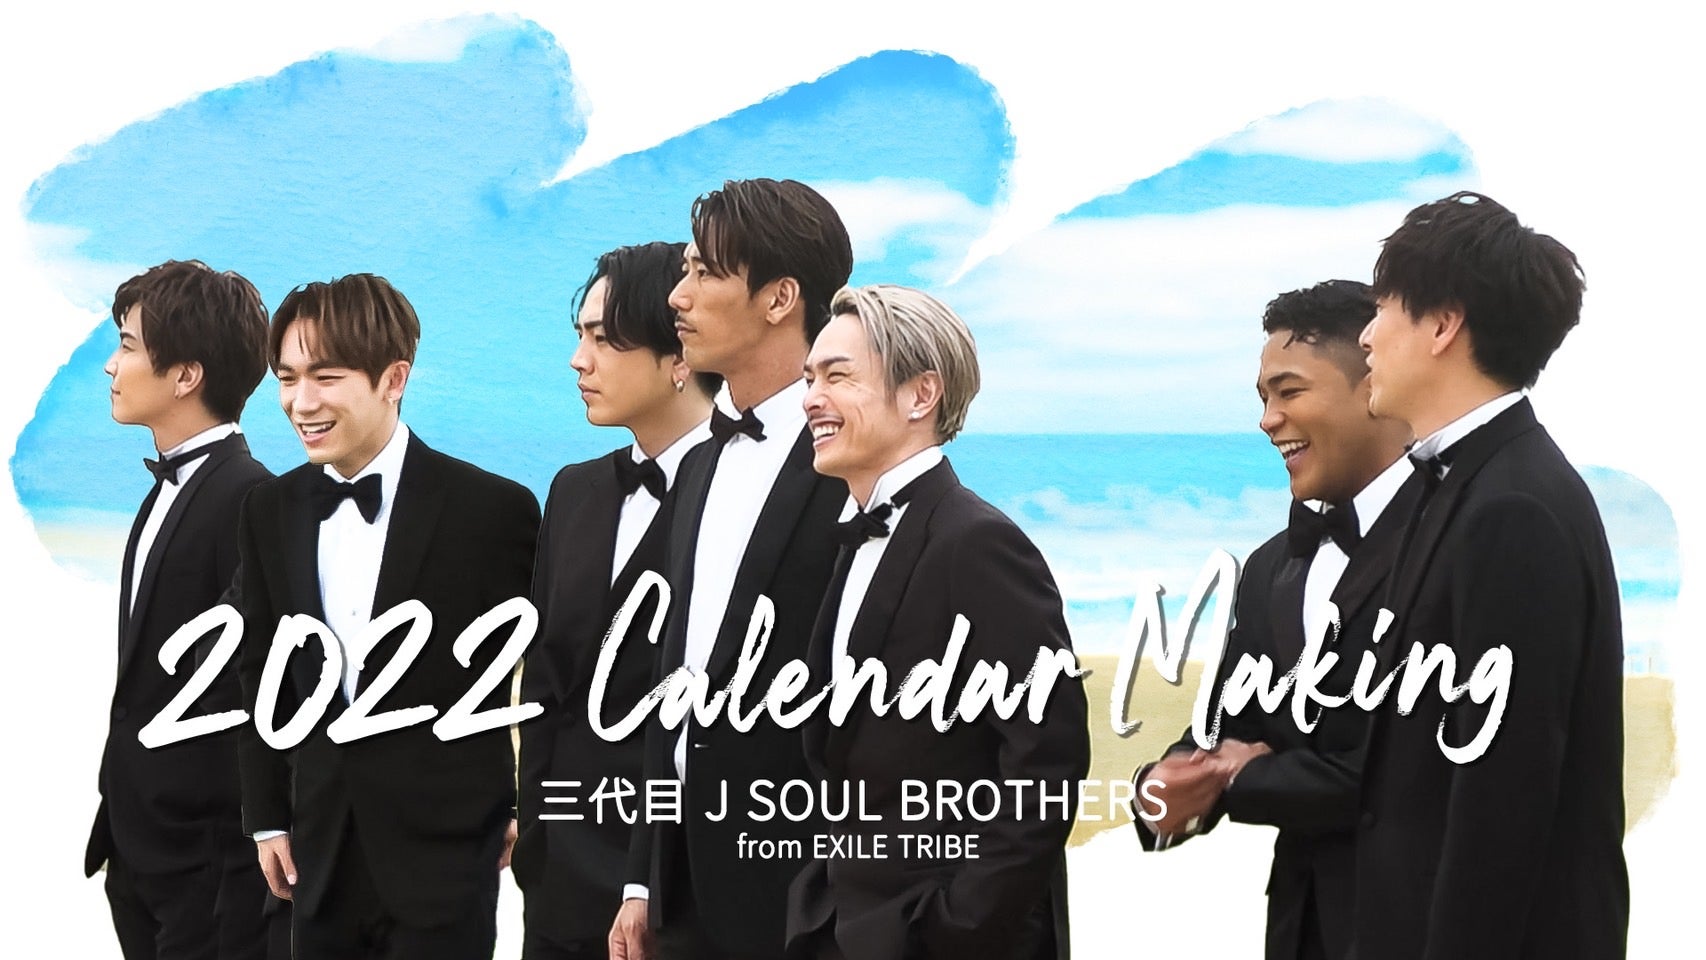 三代目 J SOUL BROTHERS「2022 Calendar Making」 2022/1/7(金) 三代目 J SOUL BROTHERS